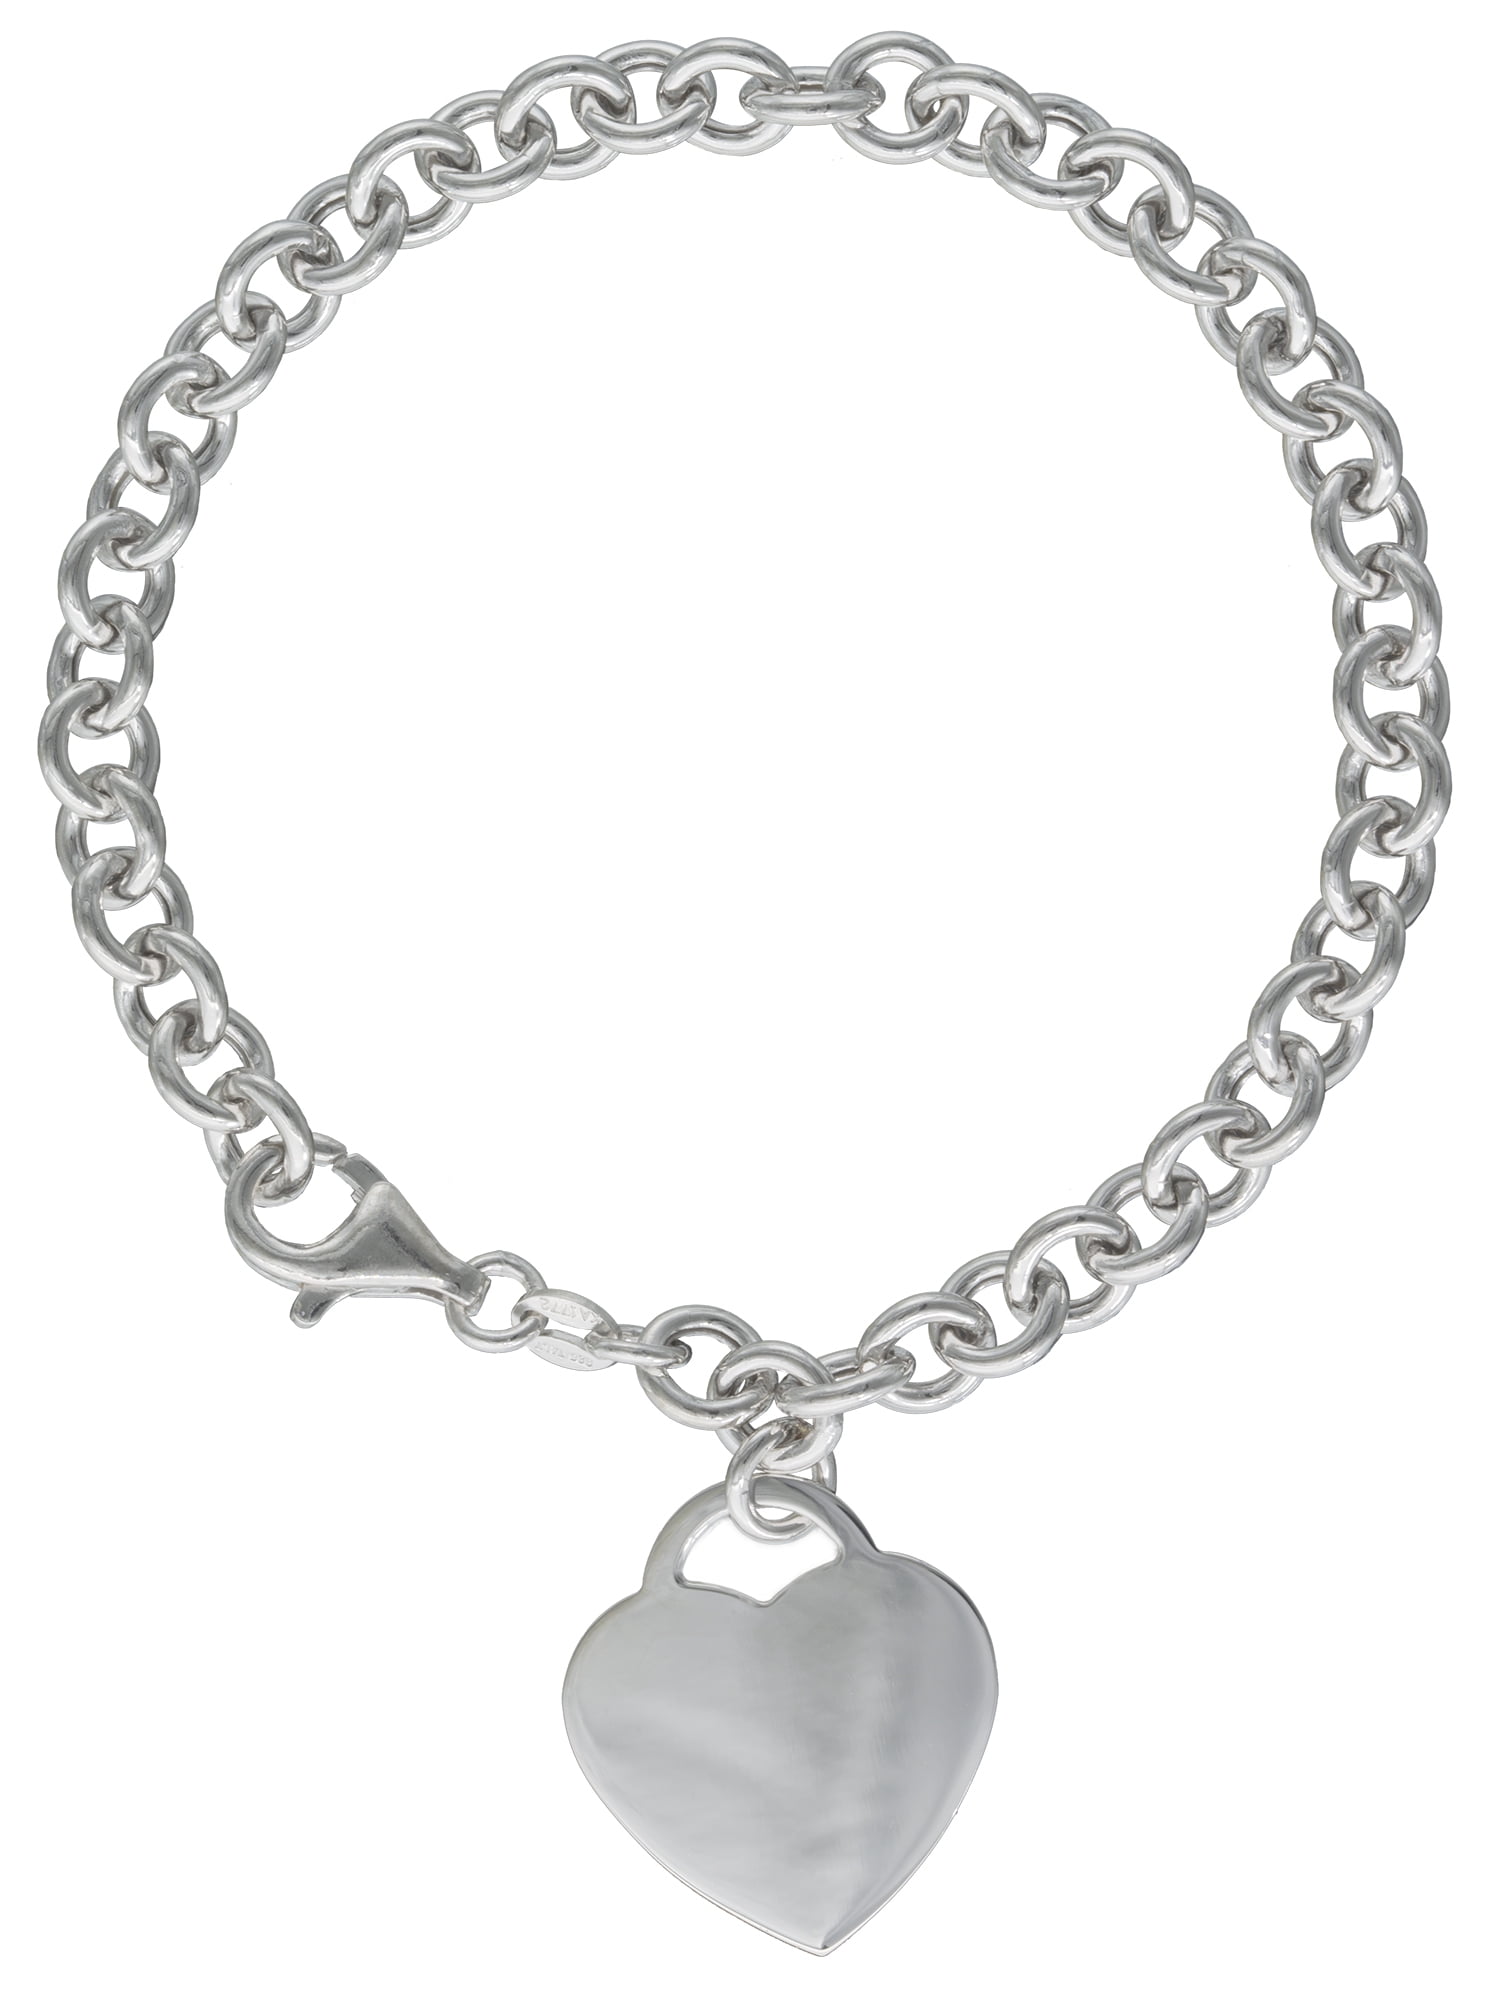 Sterling Silver Bracelets in Bracelets - Walmart.com